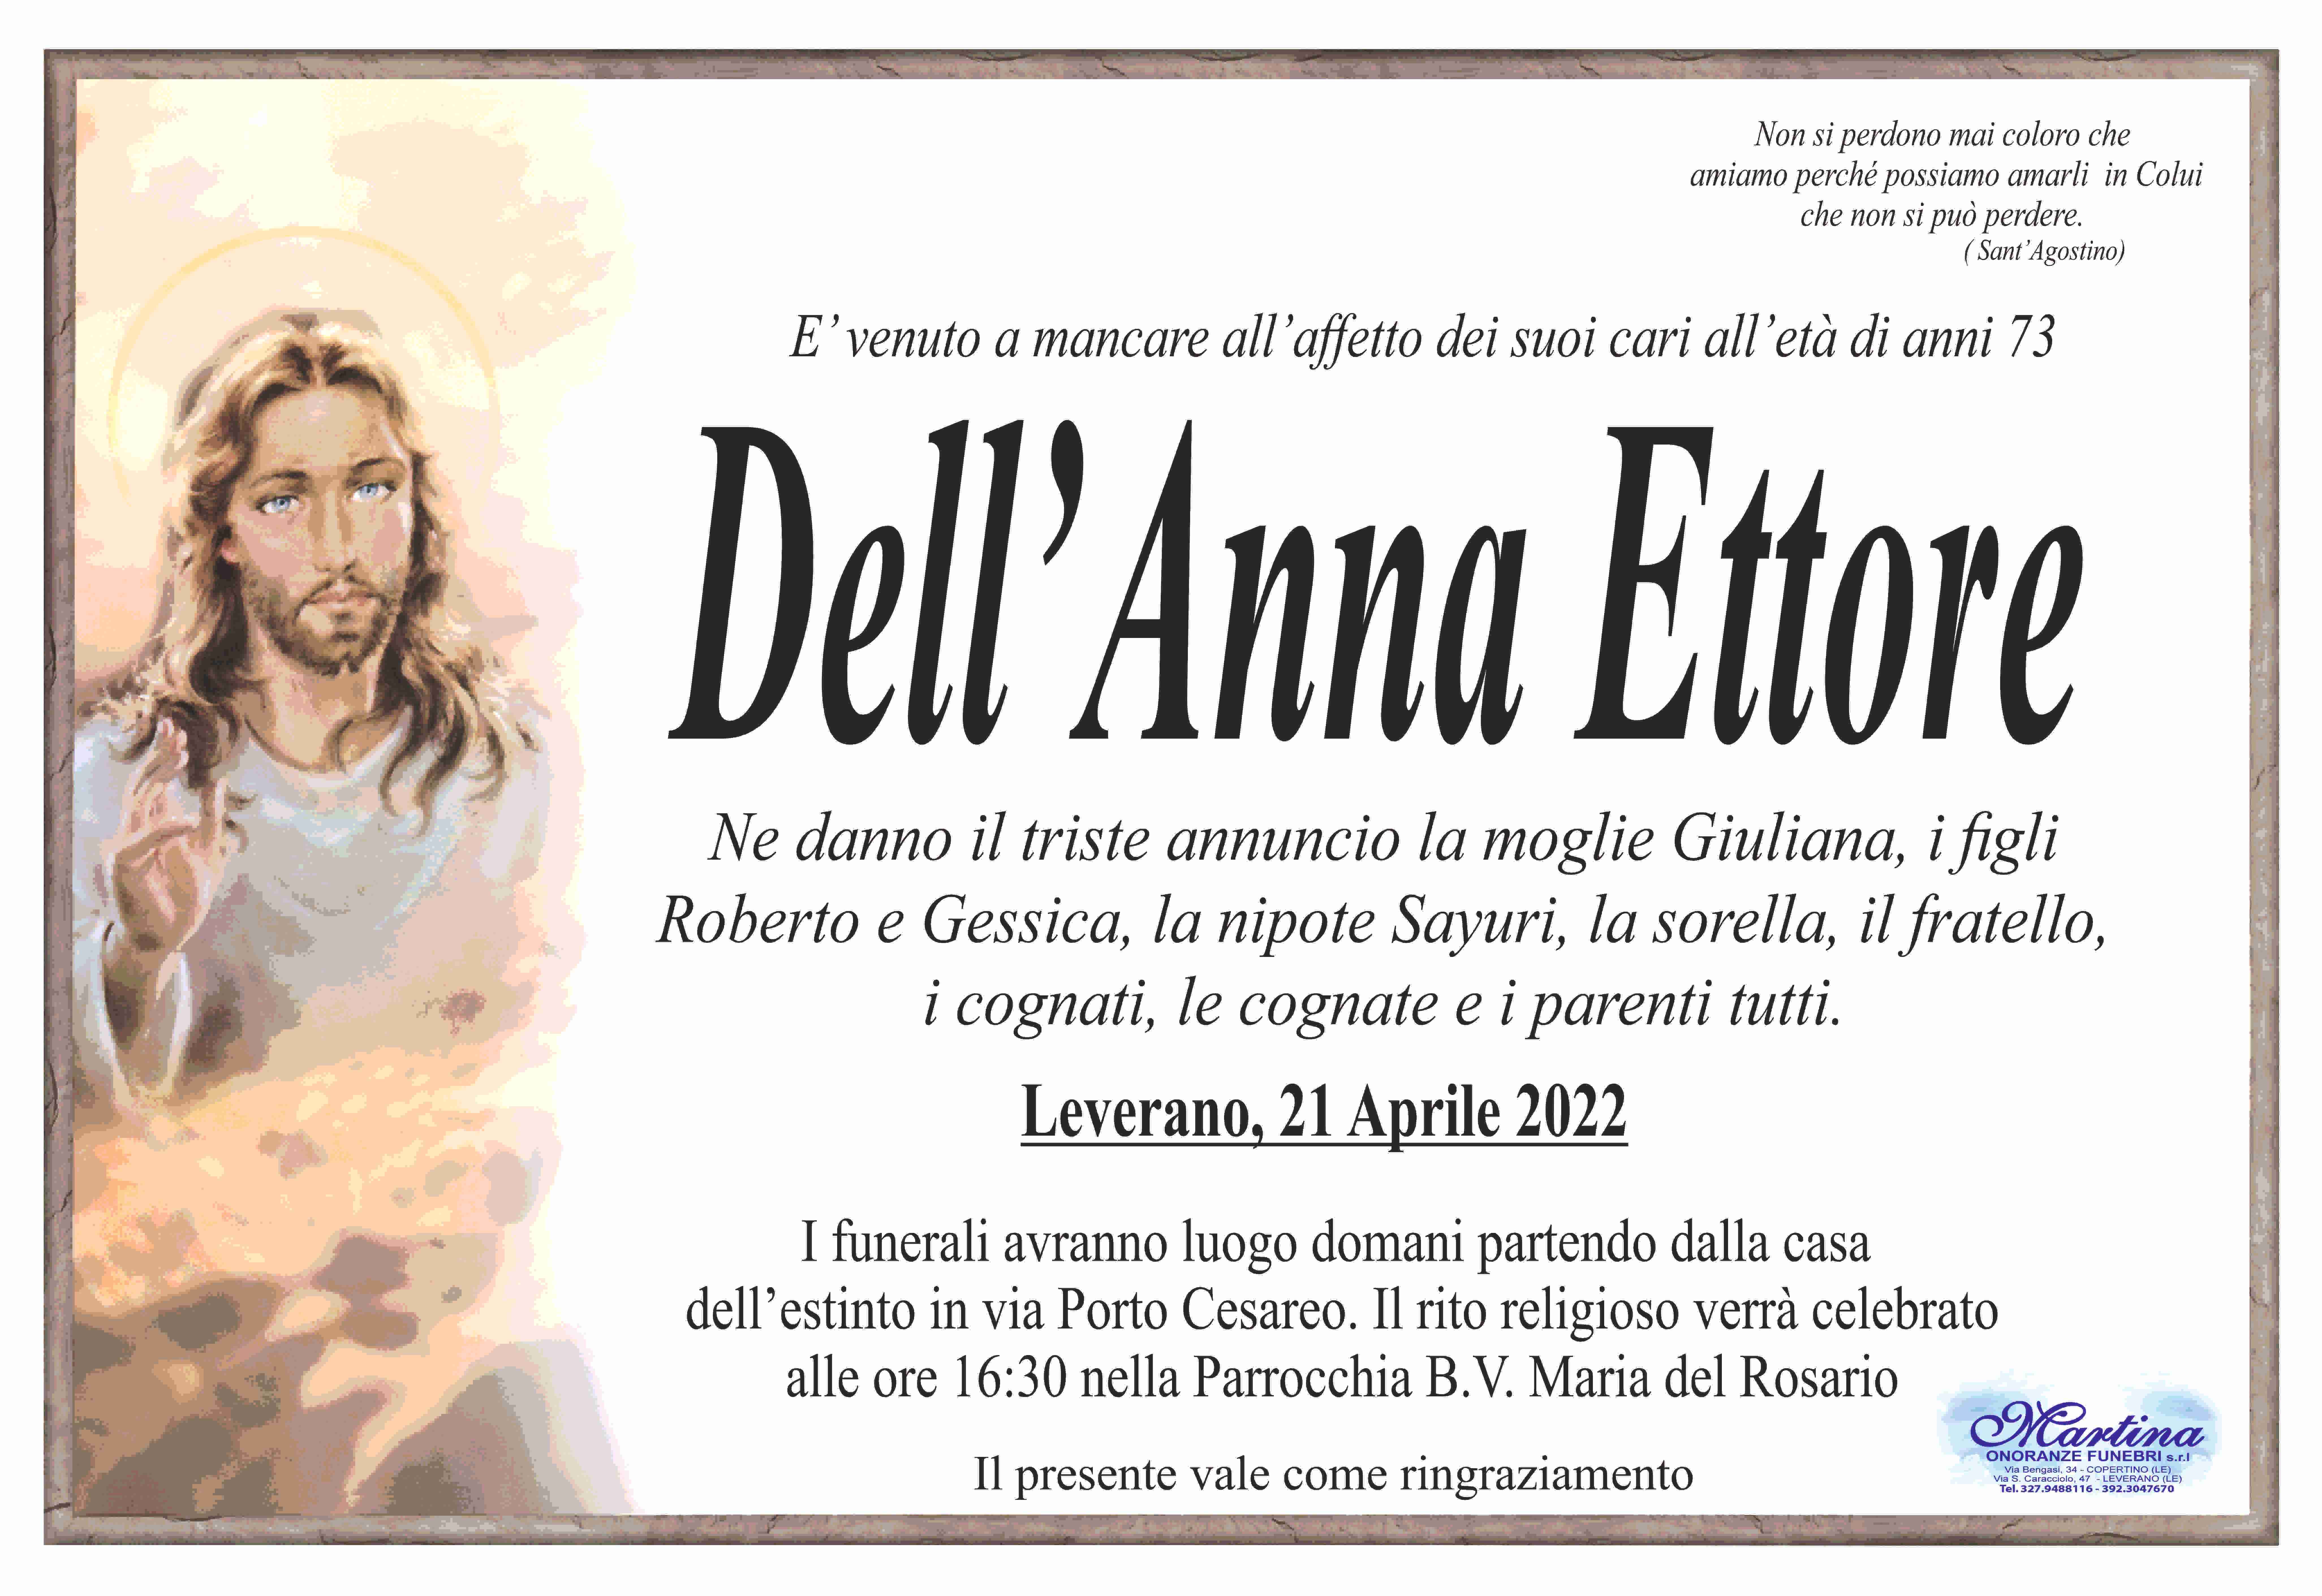 Ettore Dell'Anna